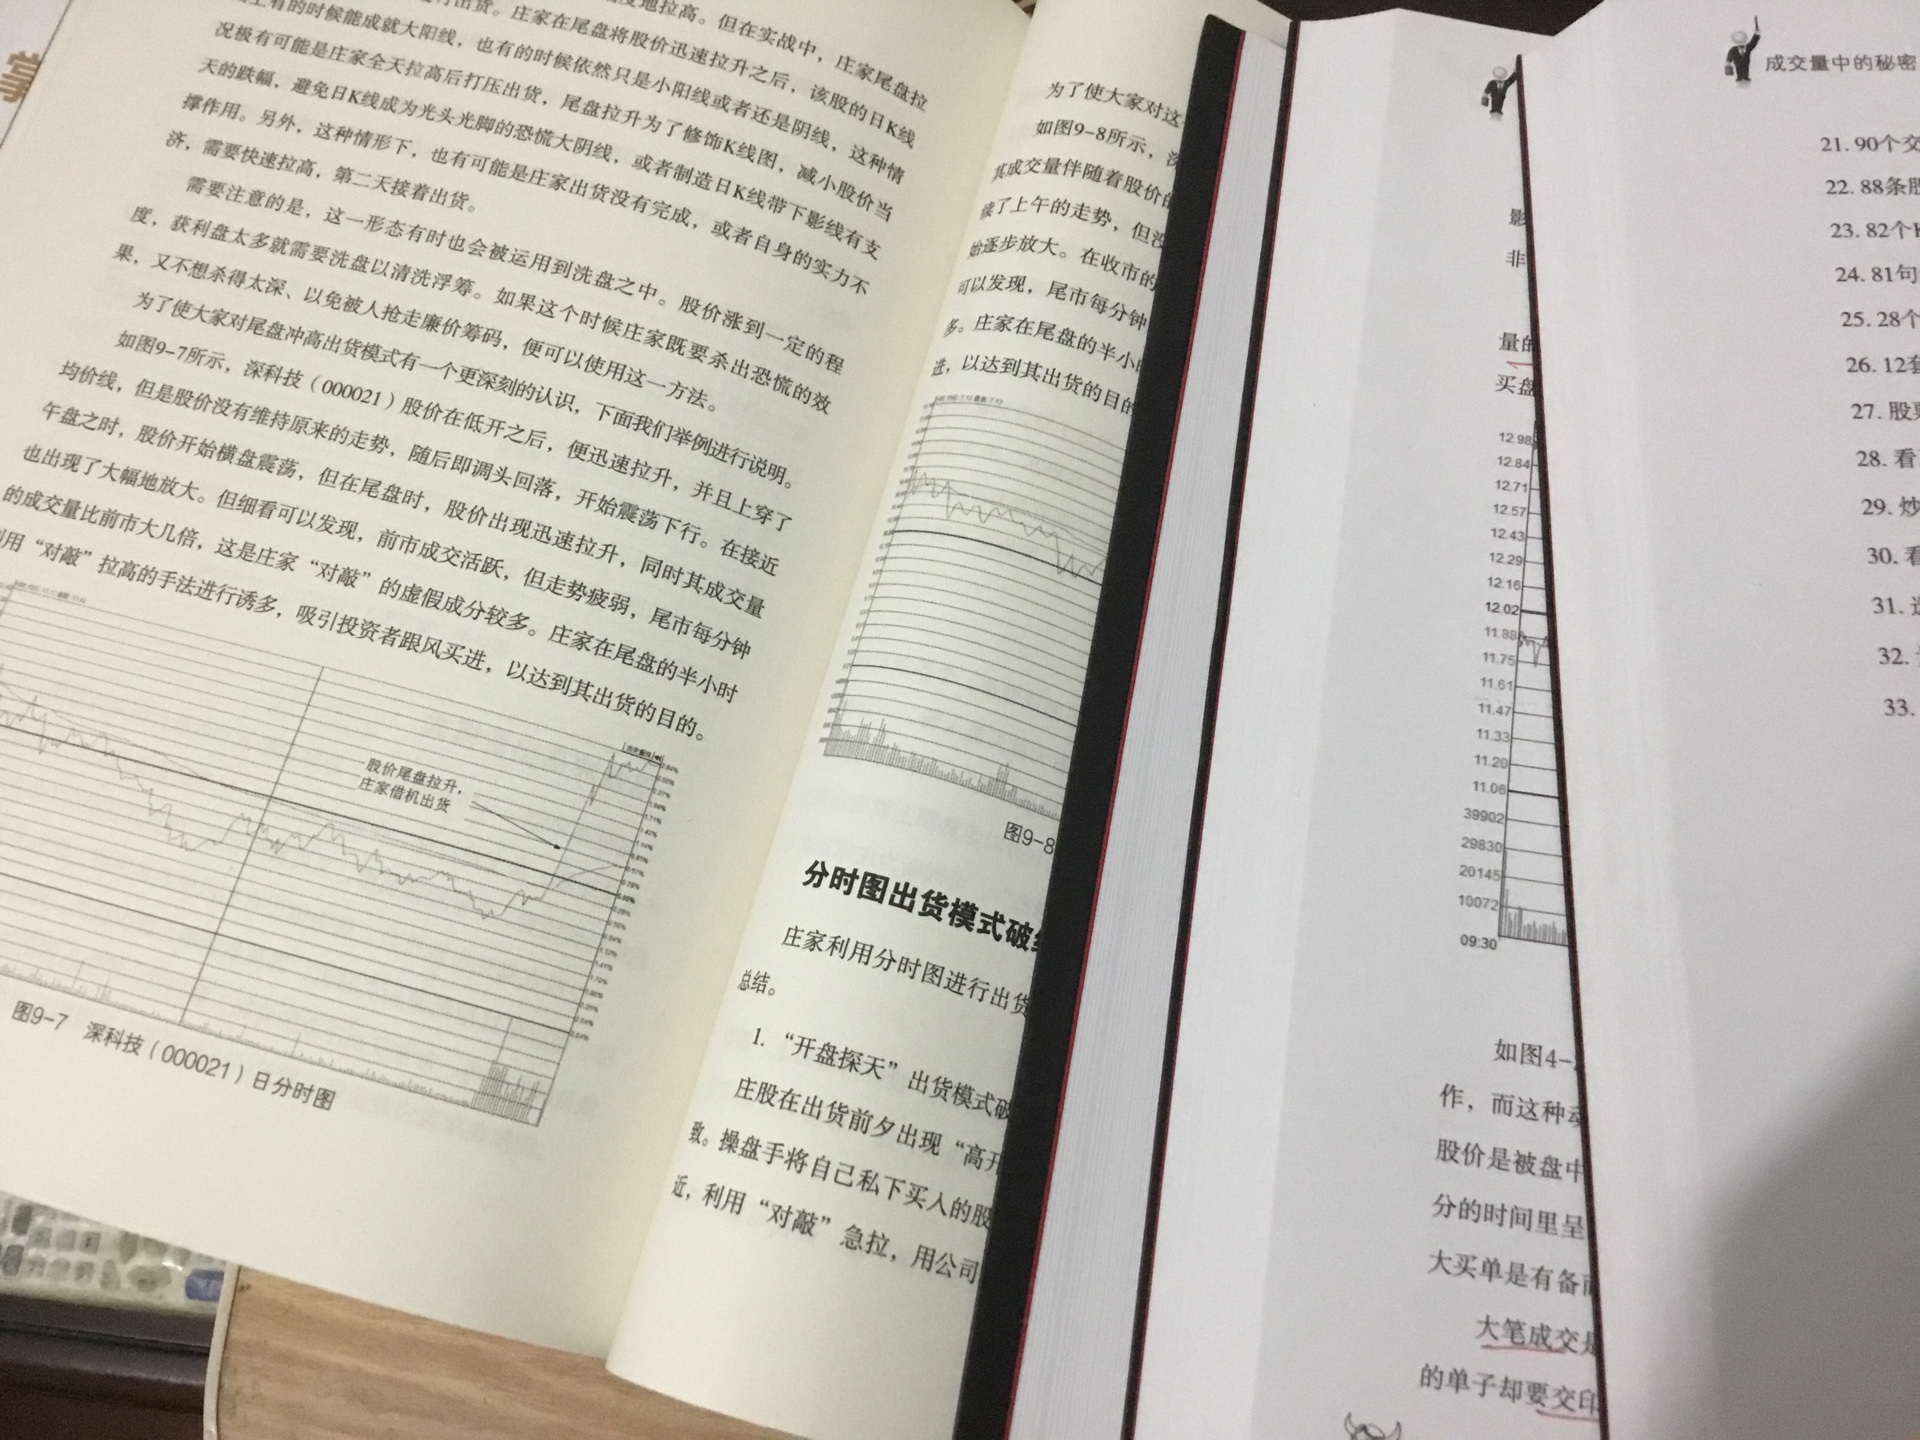 一直看曹明成的书，作为中国第一批操盘手能在股市生存下来实为不易，又有很多经验和干货，为人很低调！相信他的实力，容易懂